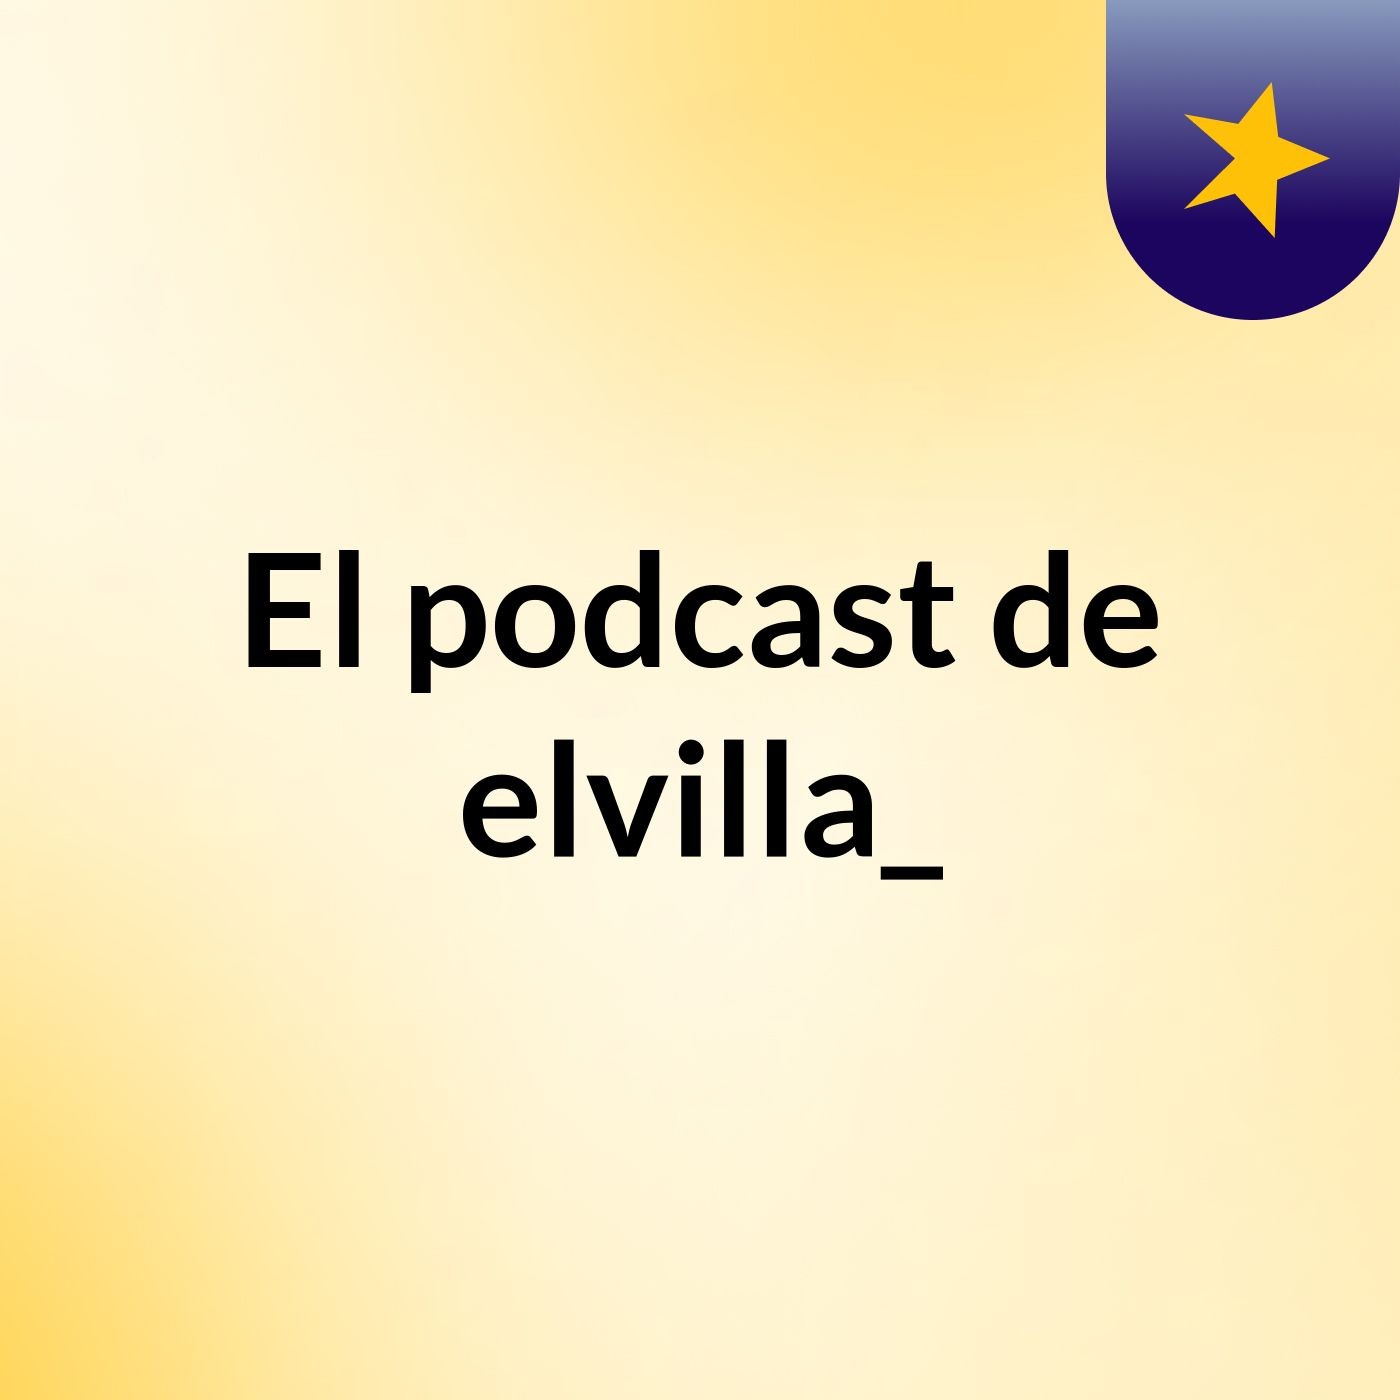 Episodio 3 - El podcast de elvilla_